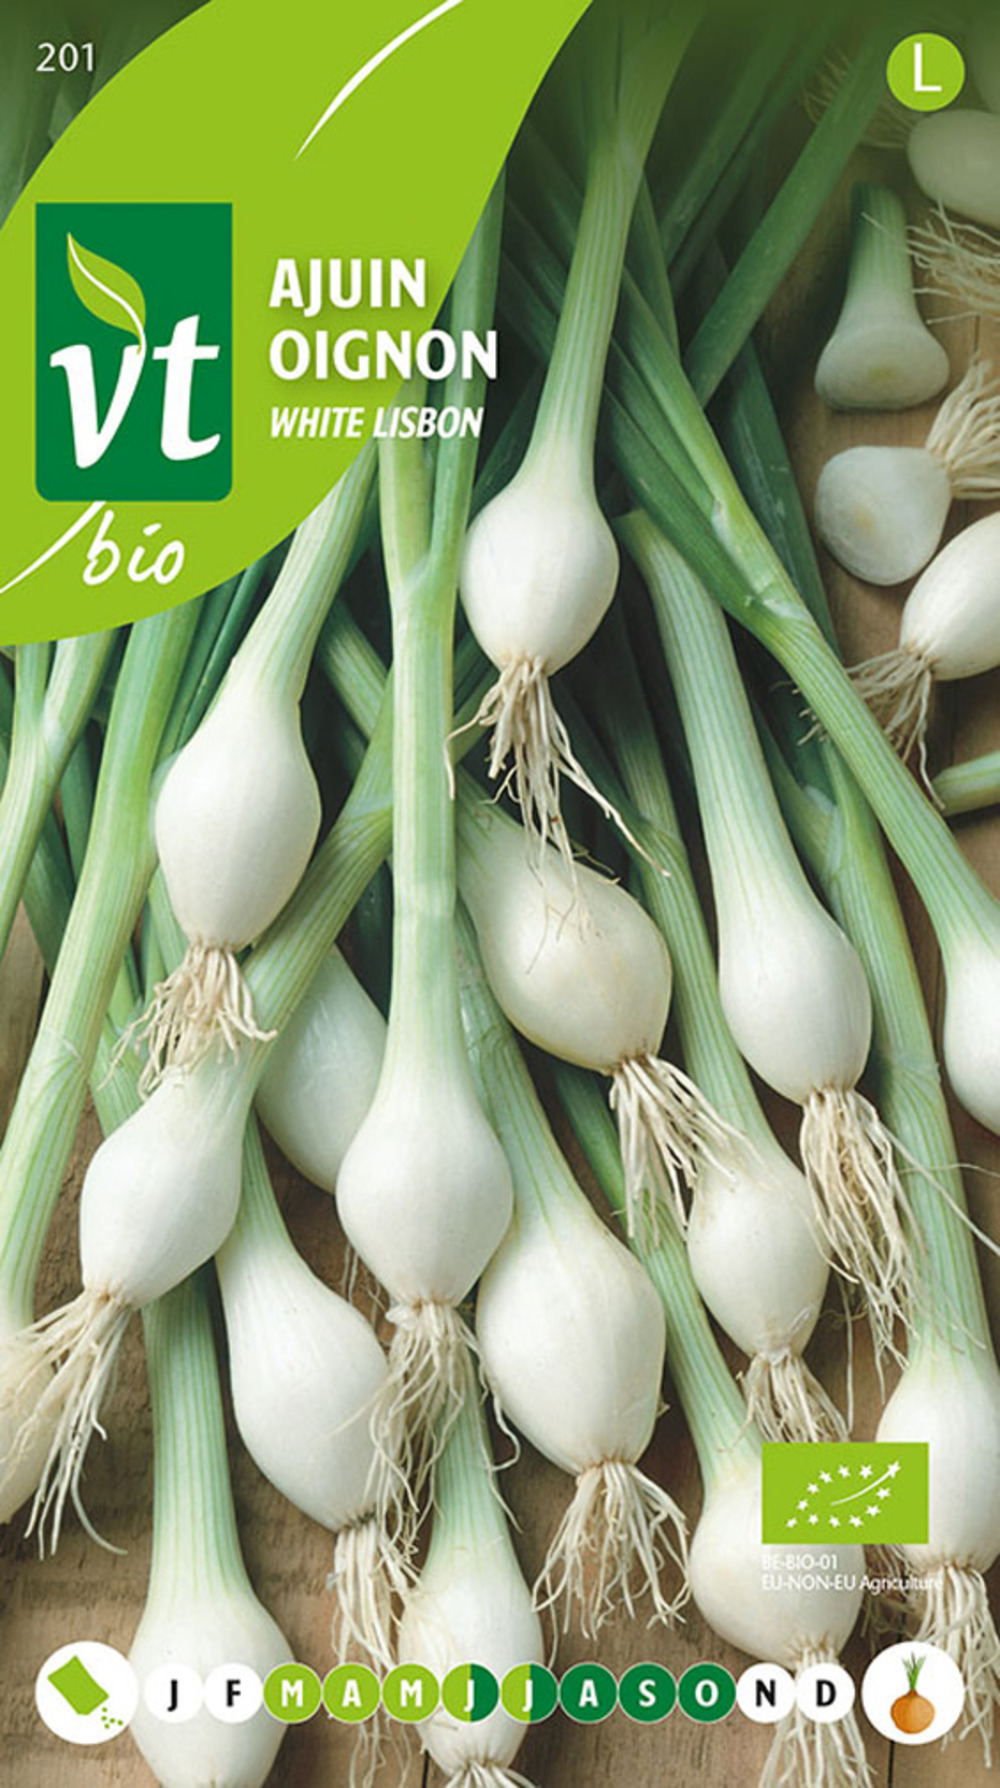 Oignon white lisbon - ca. 3 gr (livraison gratuite)